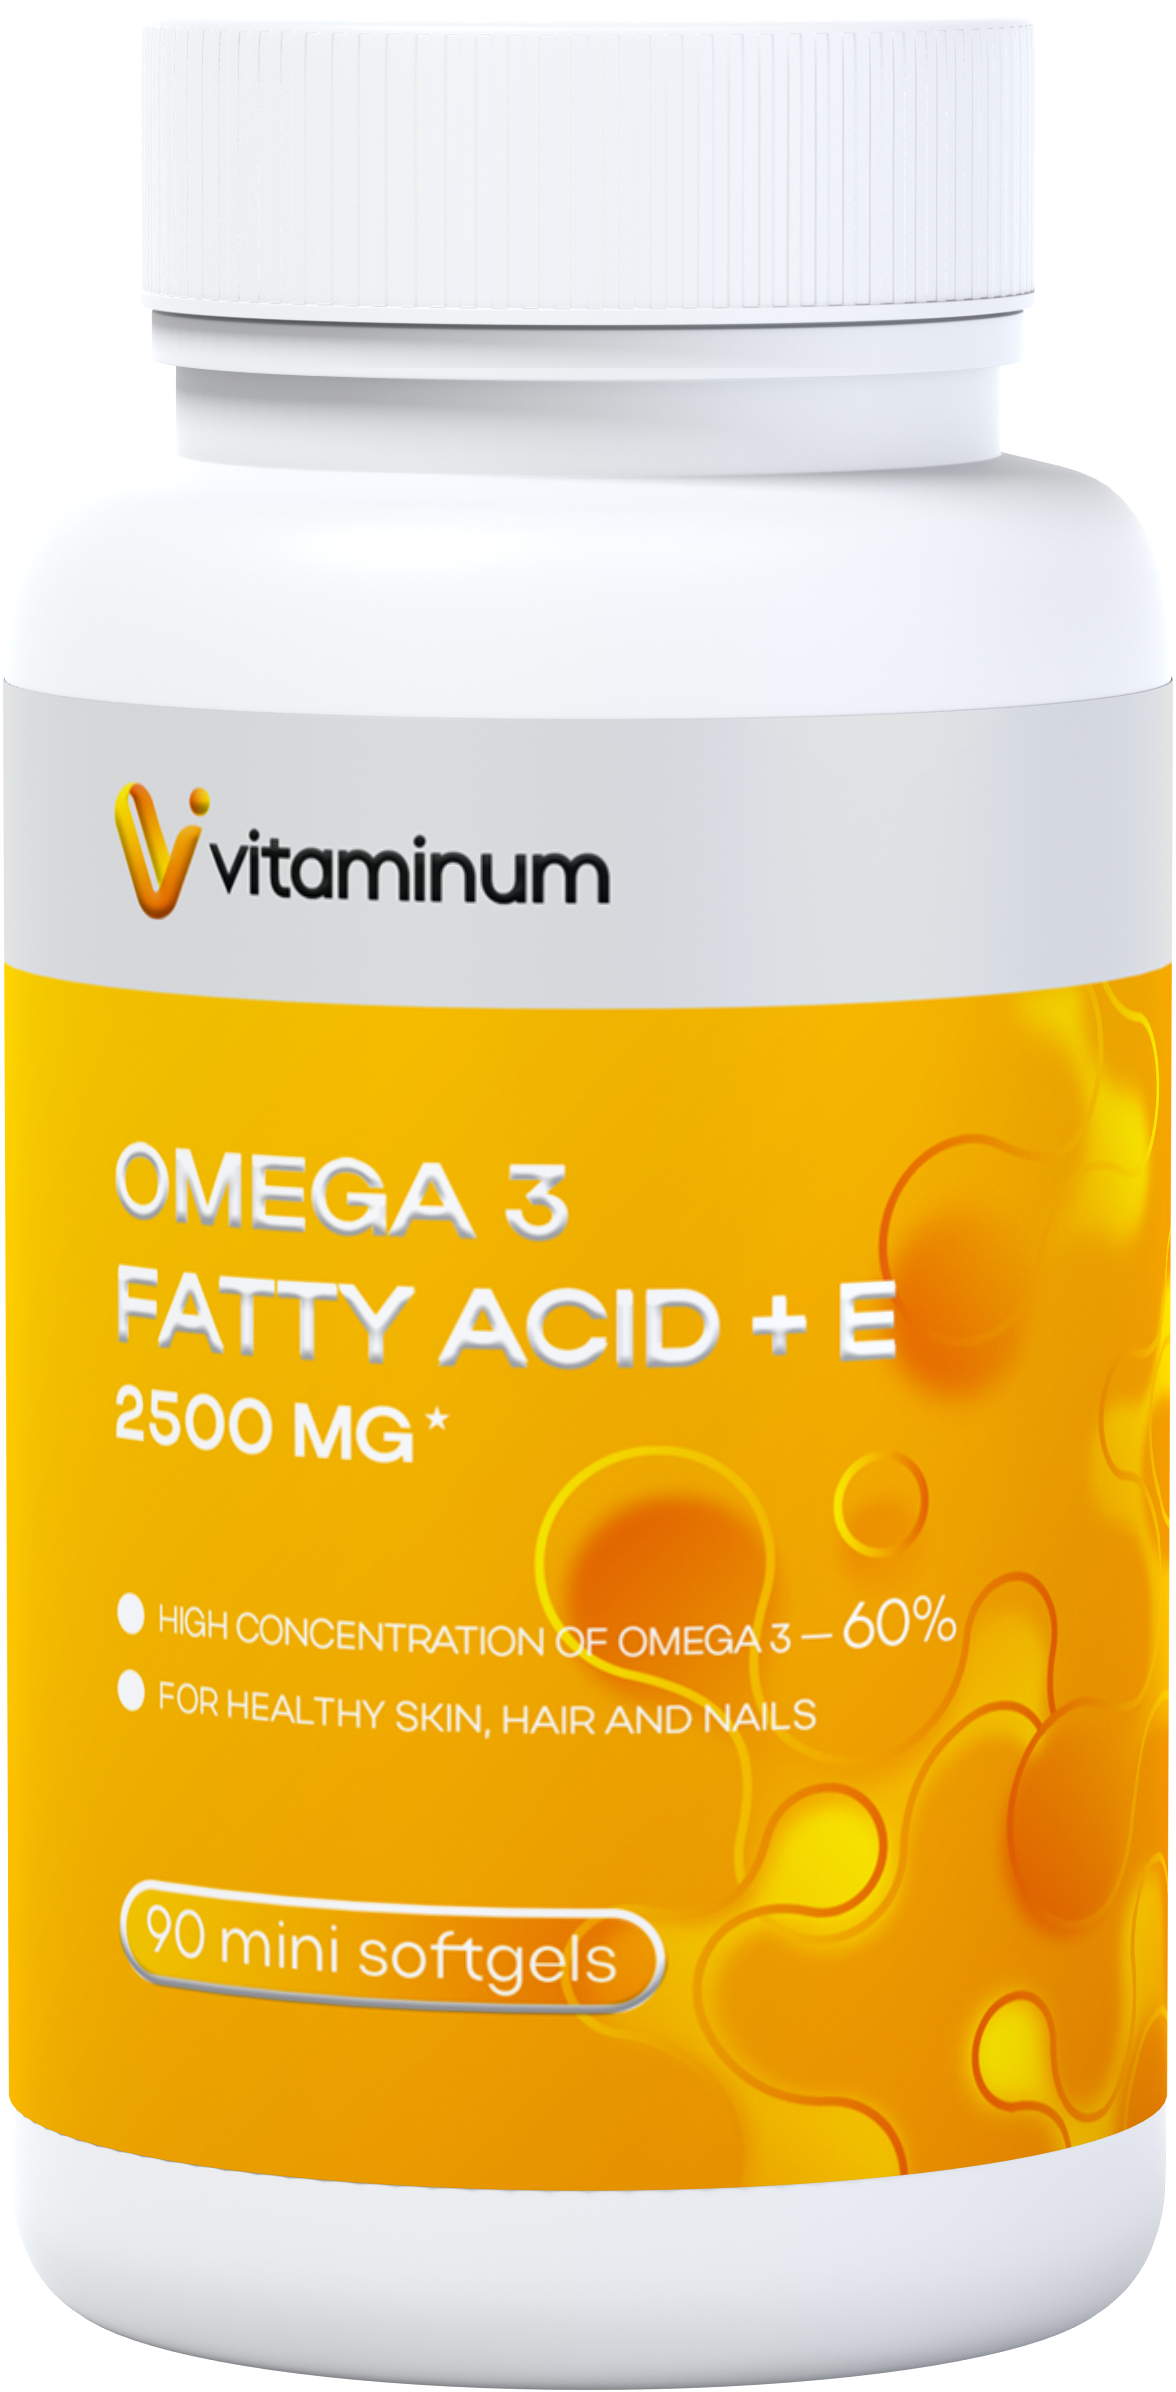  Vitaminum ОМЕГА 3 60% + витамин Е (2500 MG*) 90 капсул 700 мг   в Бахчисарае